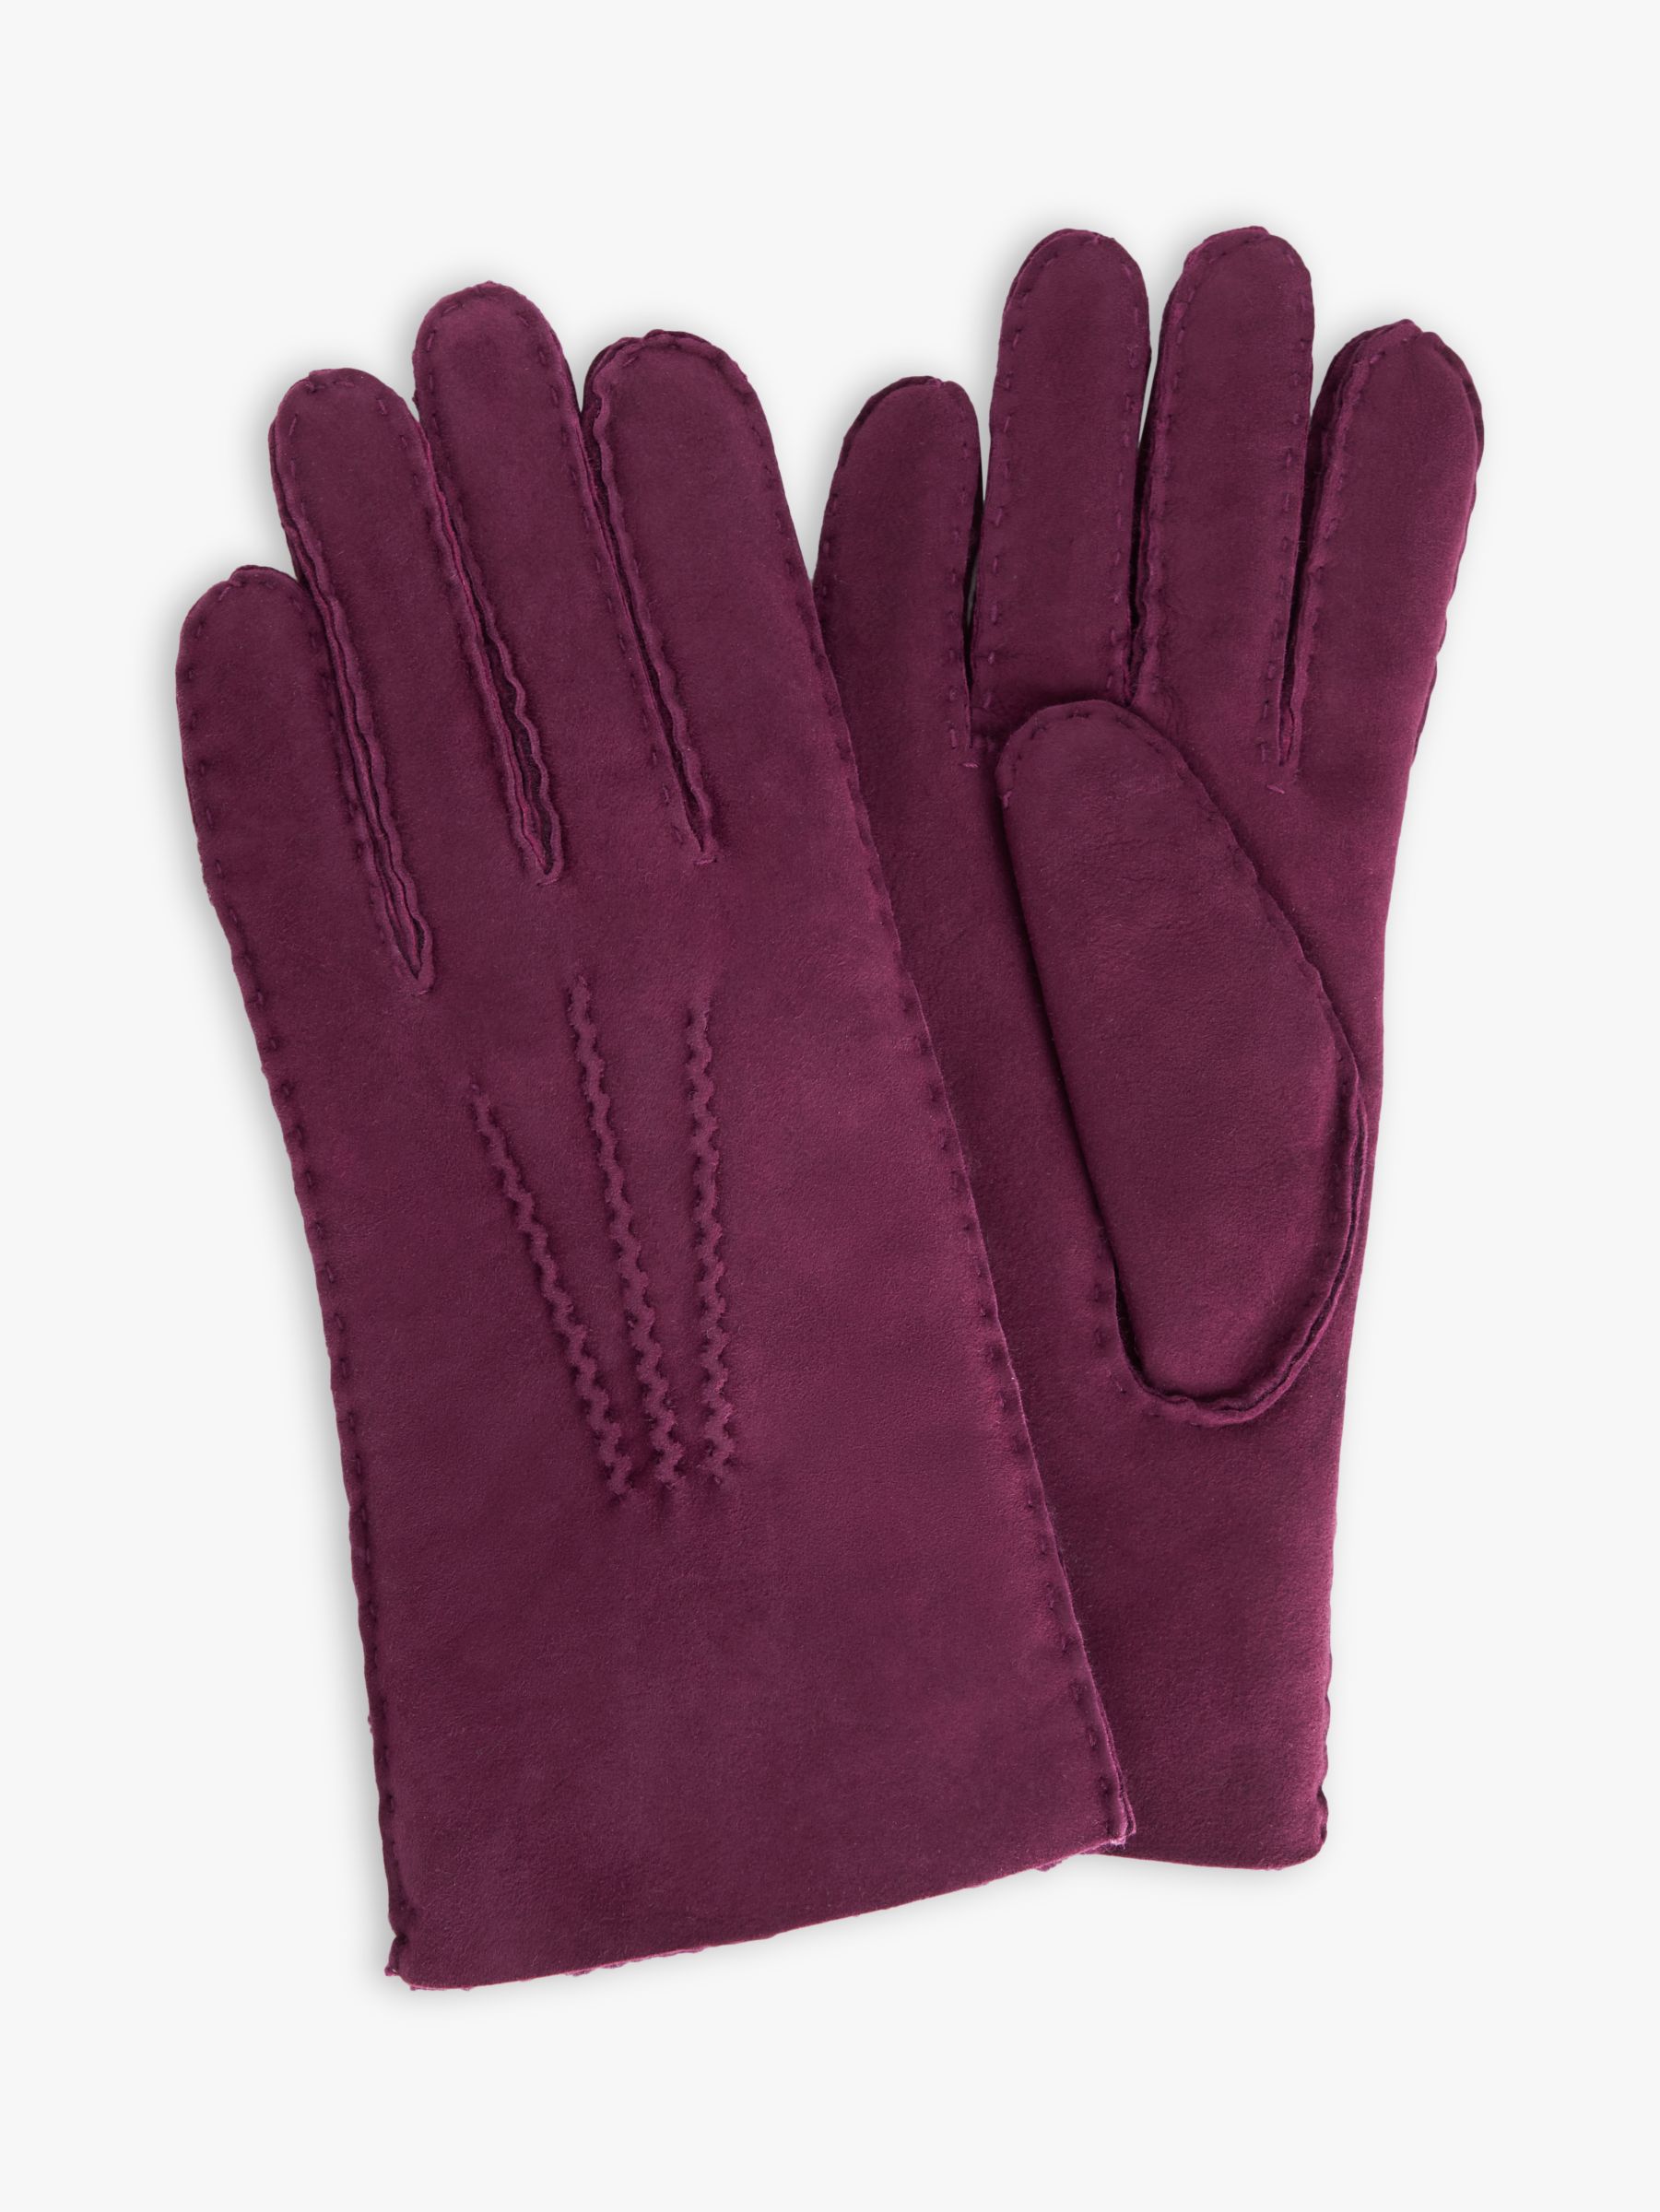 John Lewis Women's Sheepskin Gloves, Berry at John Lewis & Partners